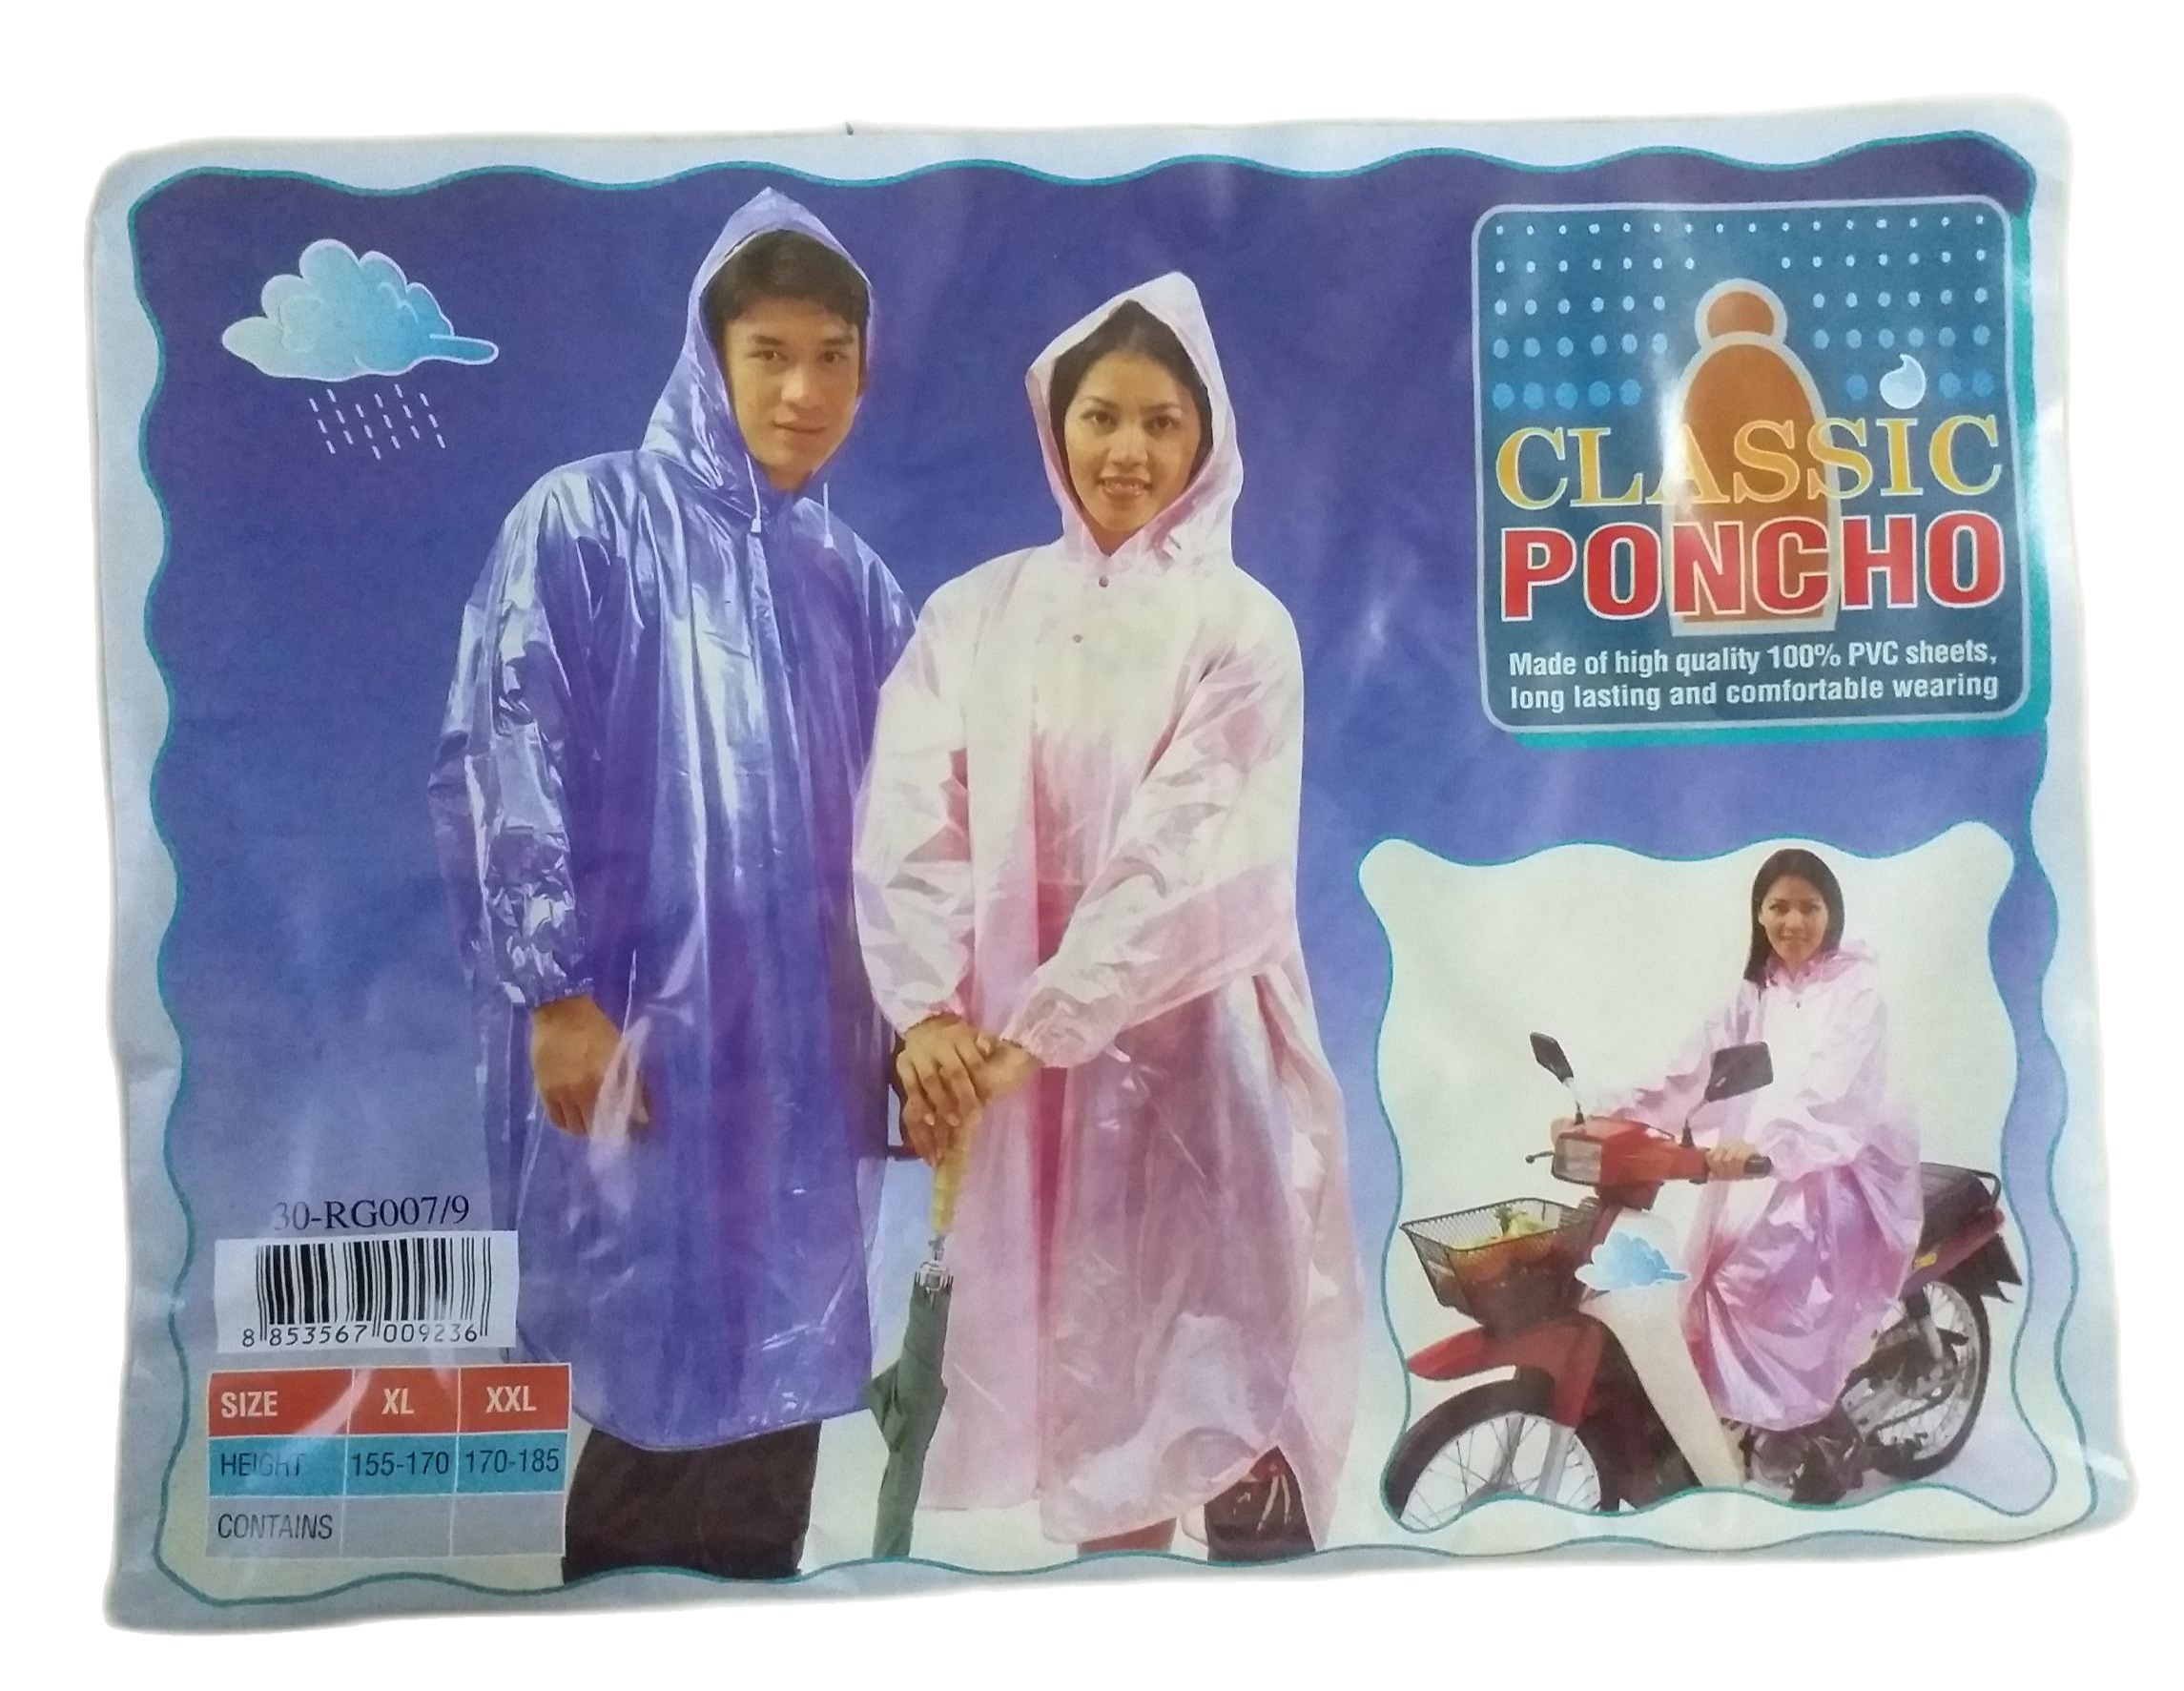 ชุดกันฝน เสื้อกันฝน PVC ทรงโปโล แขนรัด ผ้ามุก ฟรีไซค์ Classic แท้ เลือกสีได้ จำนวน 1ตัว